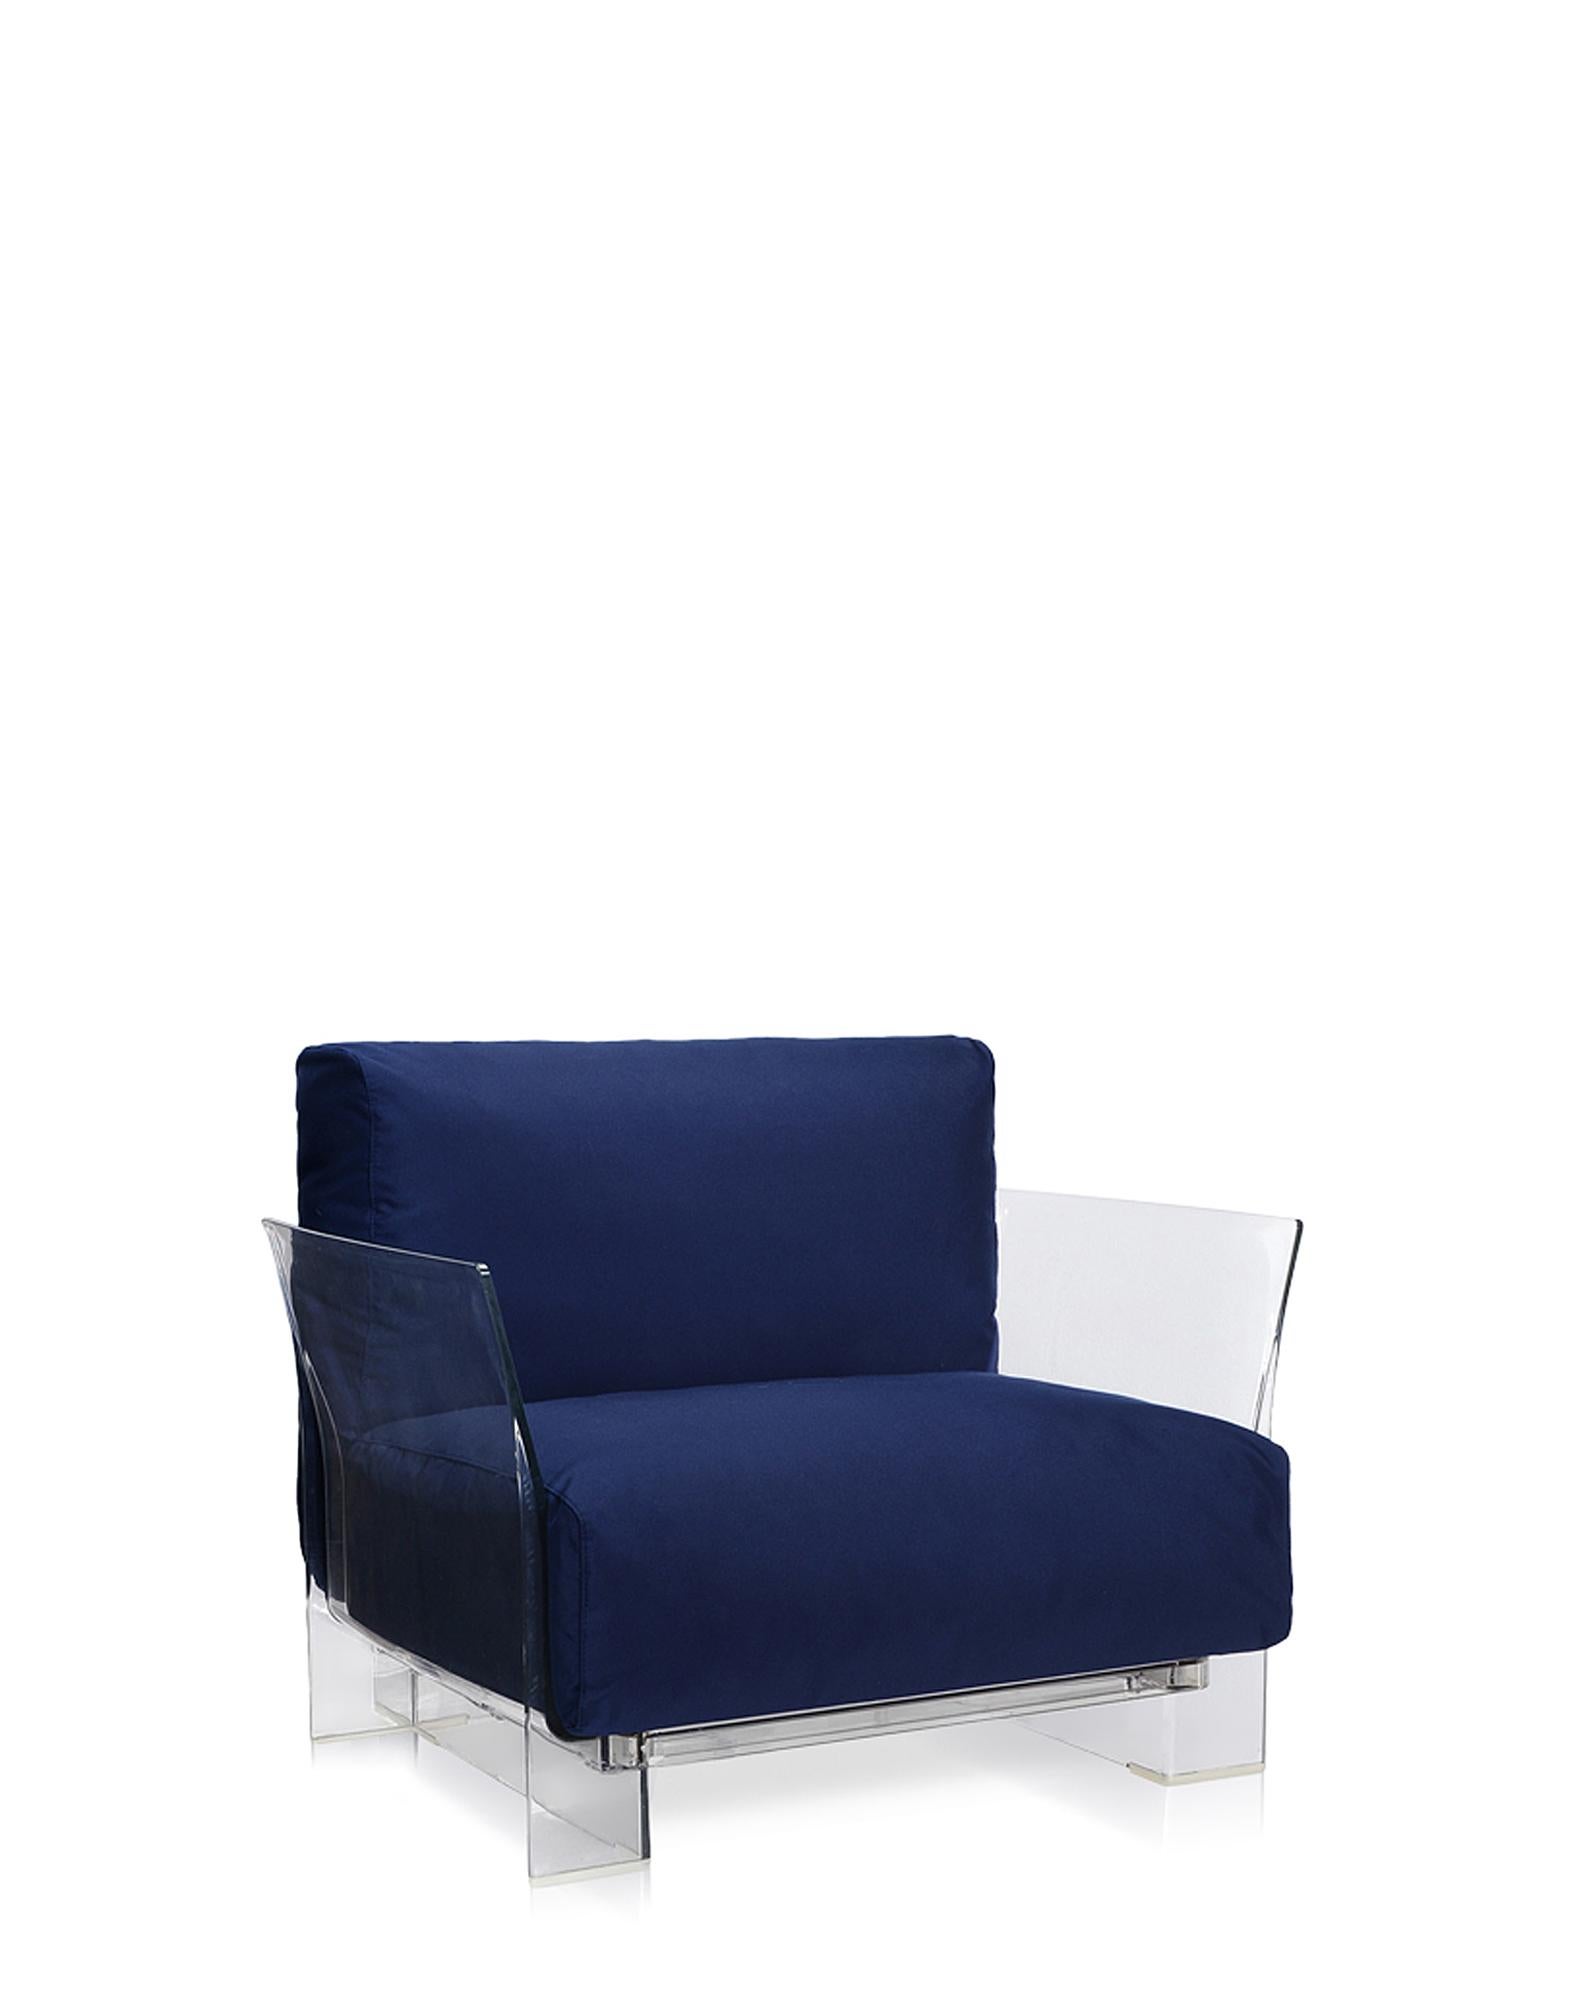 Pop outdoor ist das modulare Sofa mit flüchtigen Profilen, das sich durch große Sitz- und Rückenkissen auszeichnet, die es weich und bequem machen. Es wird mit Stoffen hergestellt, die speziell für den Außenbereich konzipiert wurden. 
Die